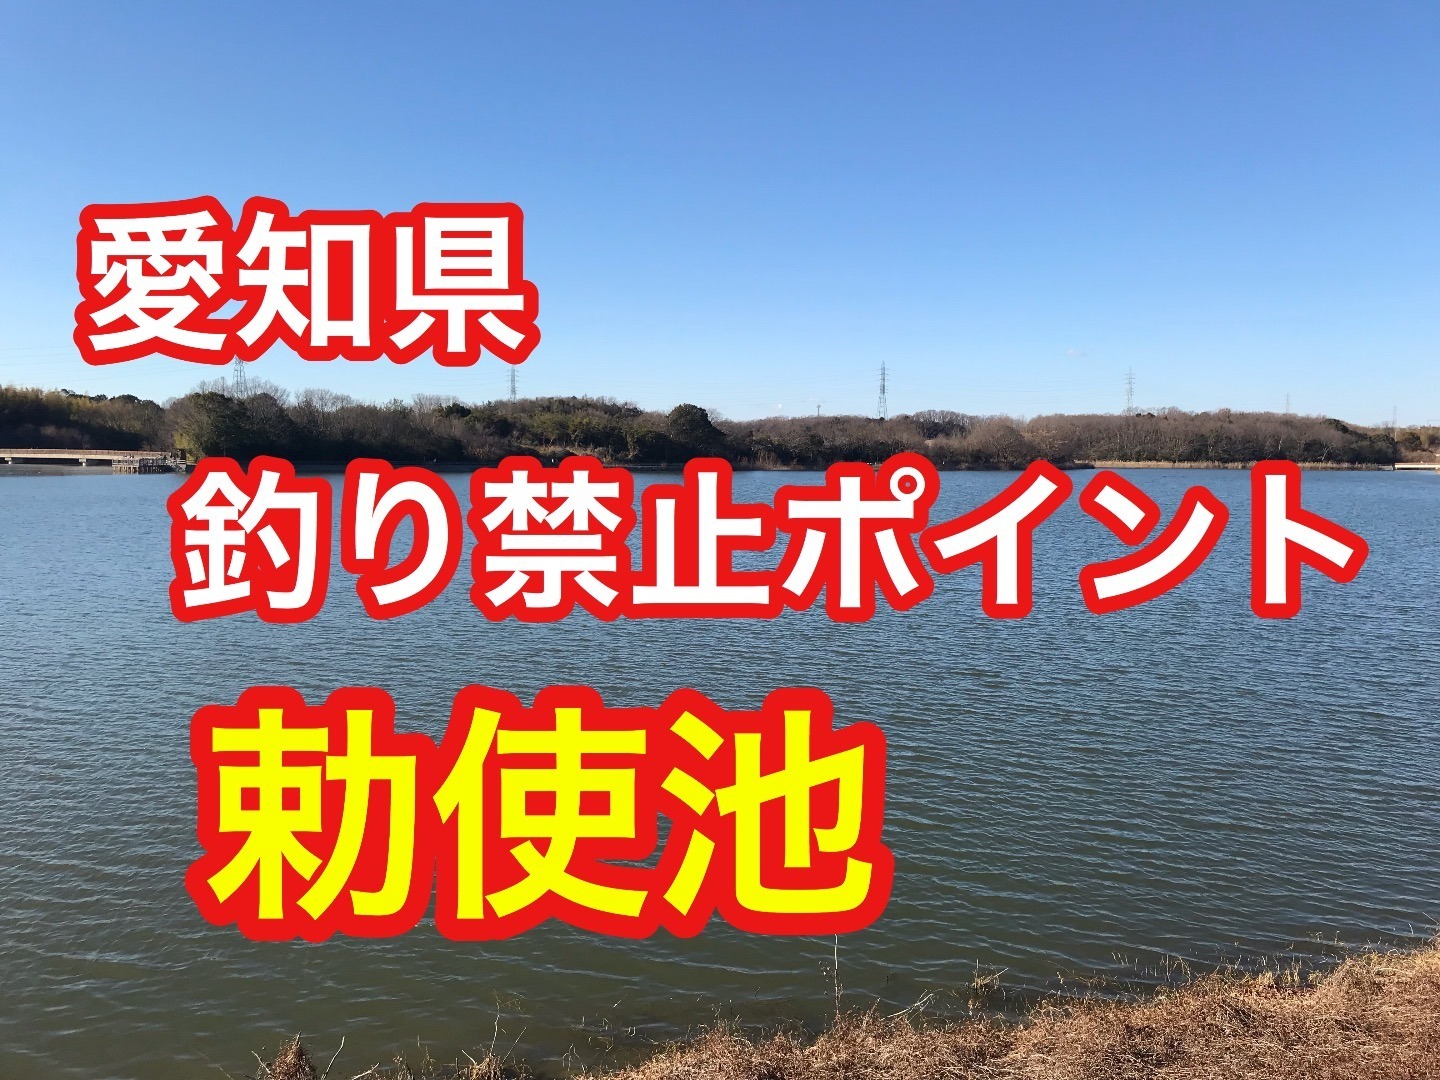 釣りドリーム 勅使池 愛知県 釣り禁止ポイント ブラックバス